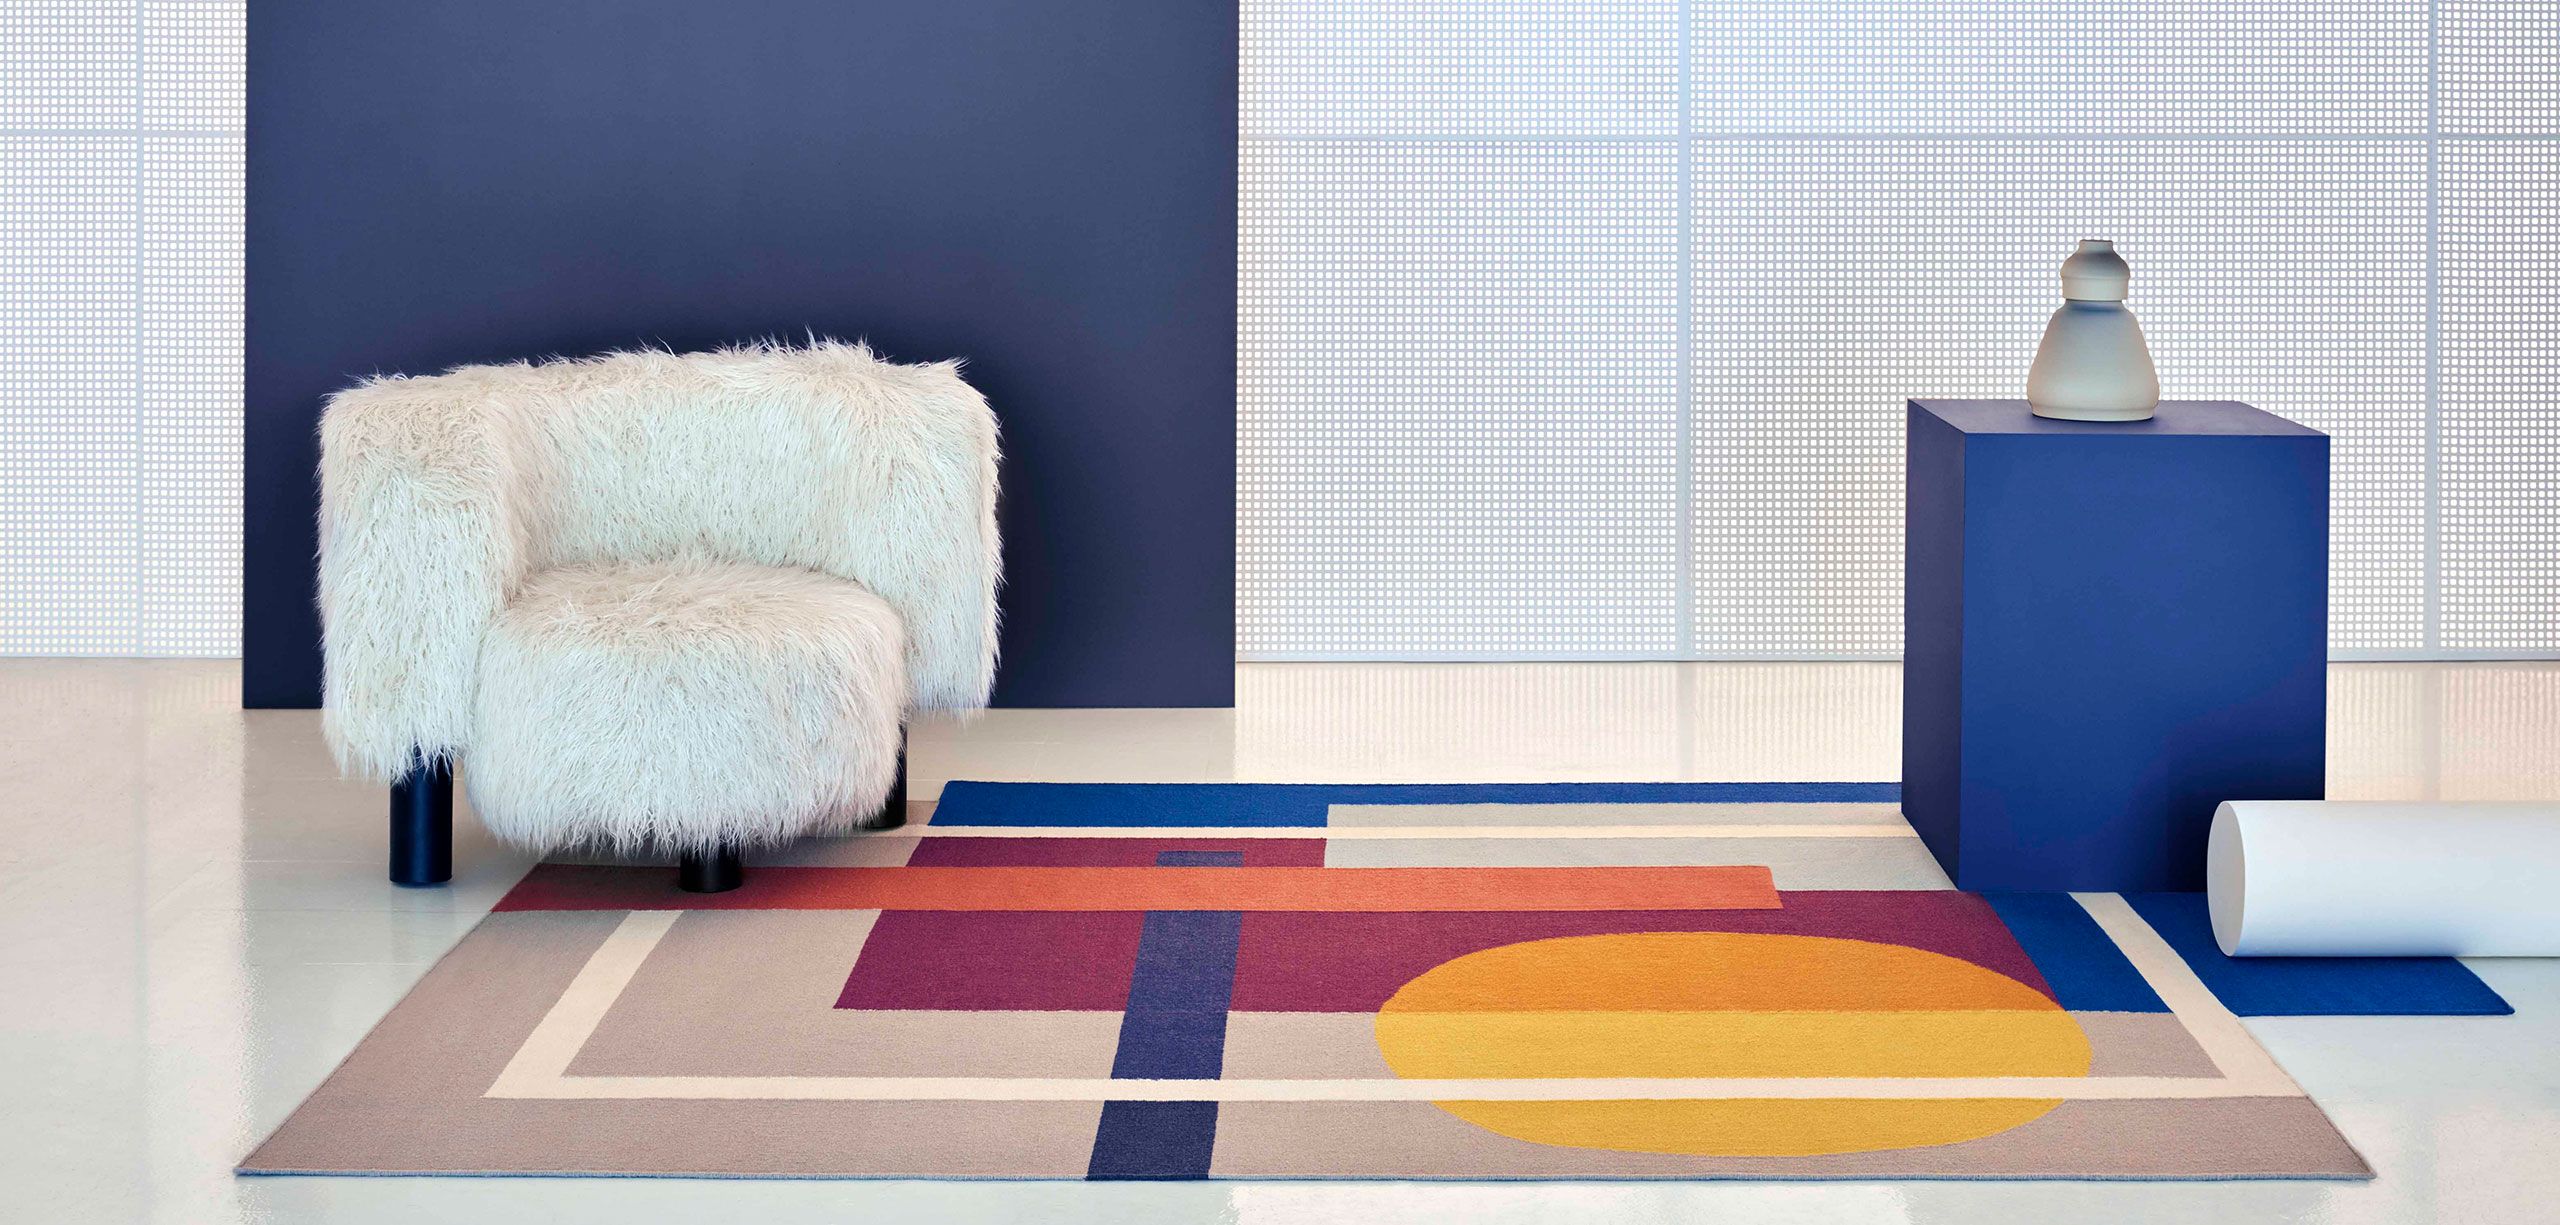 compañero paquete Instalaciones 20 alfombras de diseño muy originales para decorar el salón